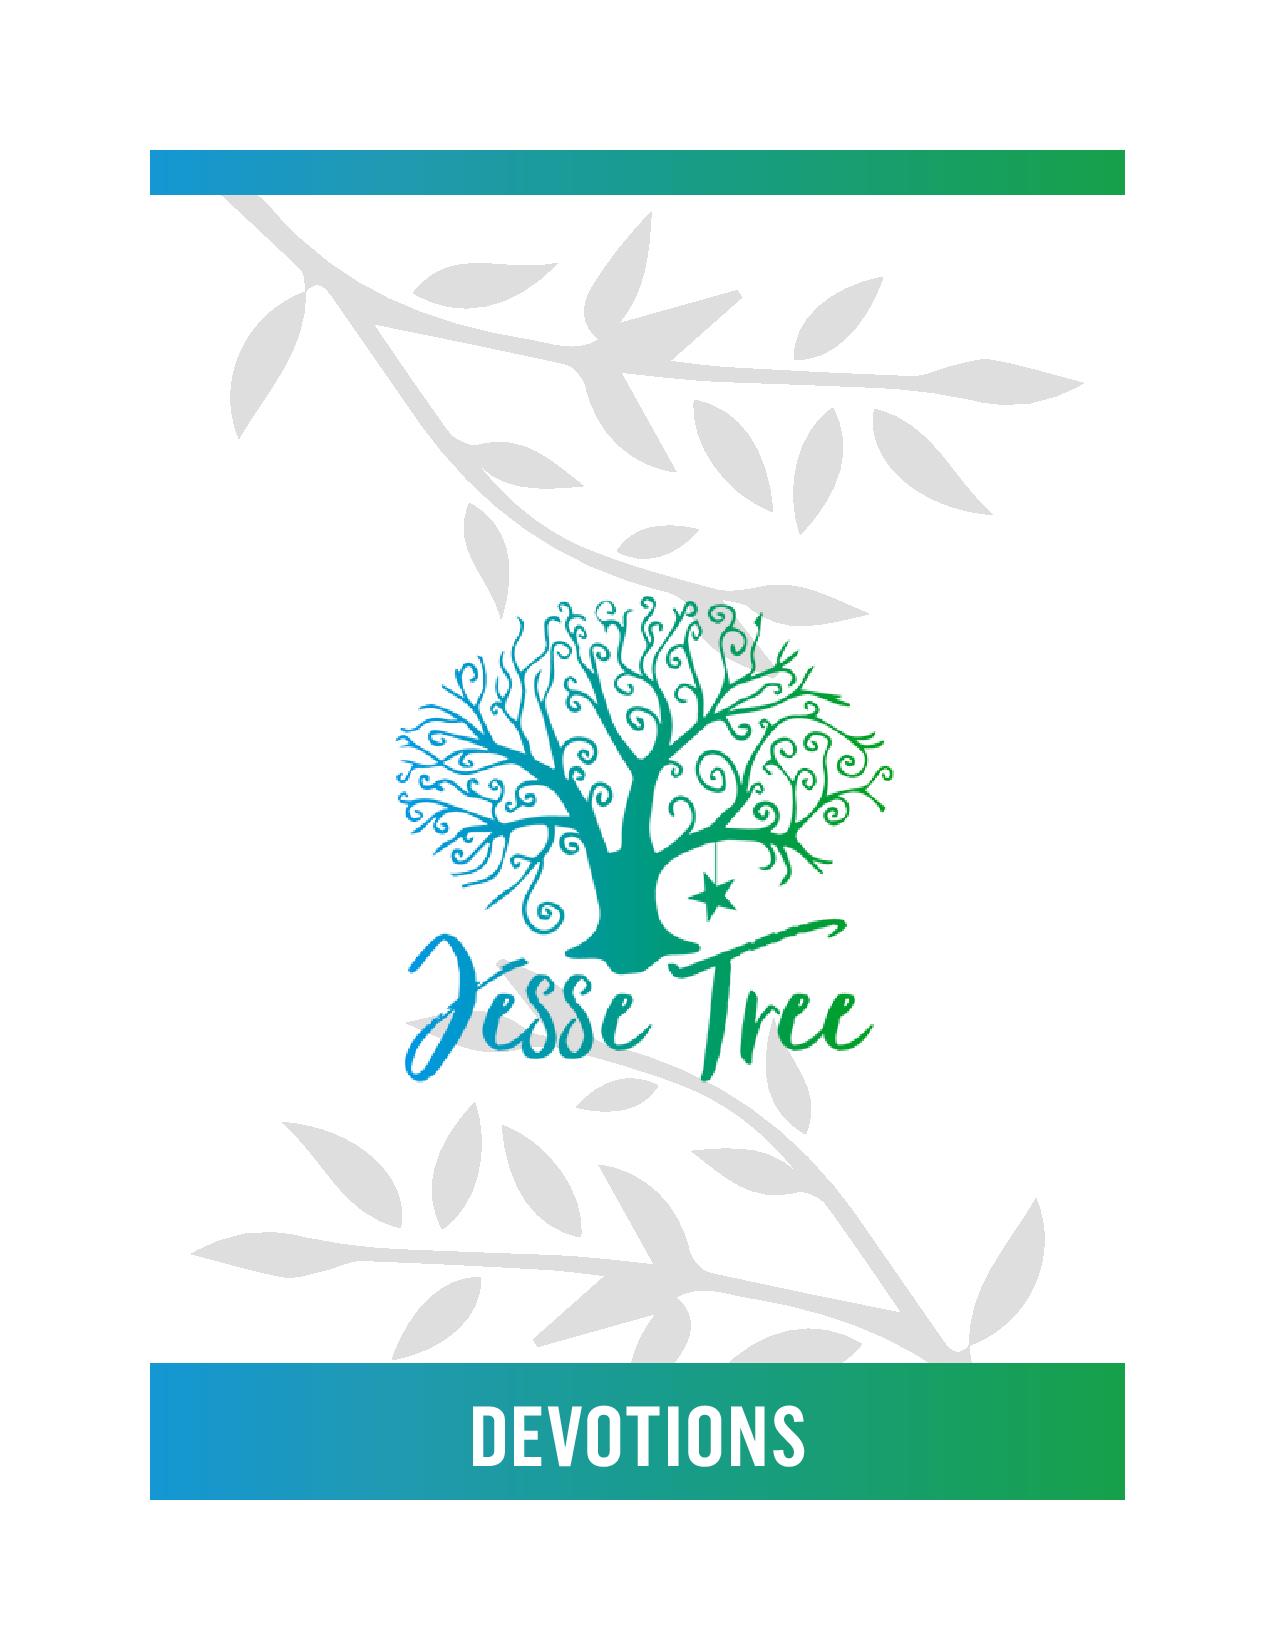 Portada de las devociones personales del Árbol de Jesse